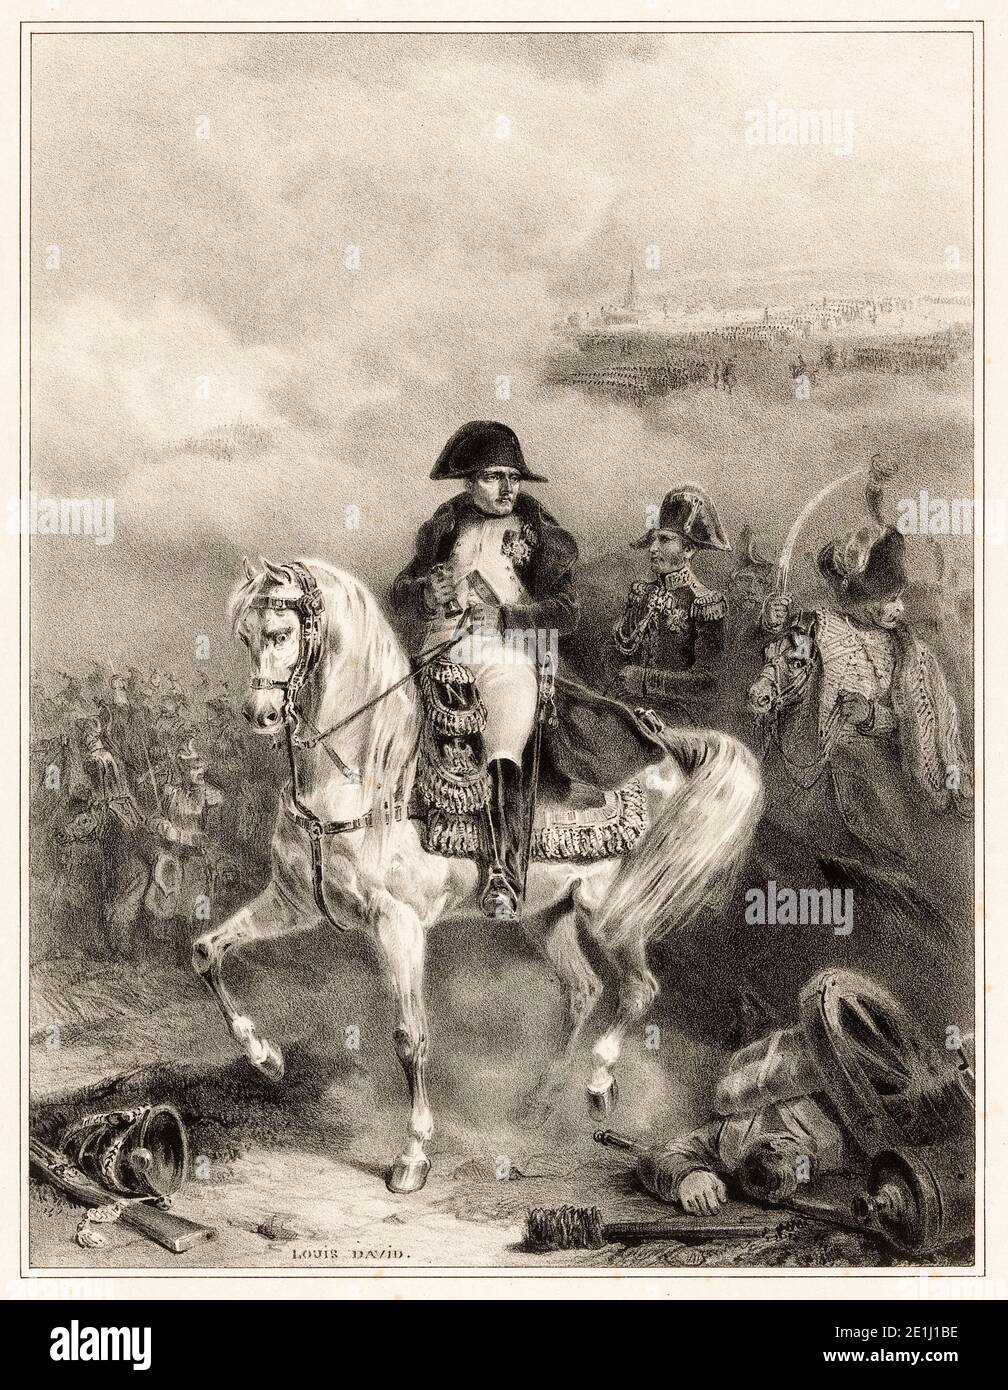 Napoléon Bonaparte I à cheval sur le champ de bataille, portrait équestre de Jacques-Louis David, 1853 Banque D'Images